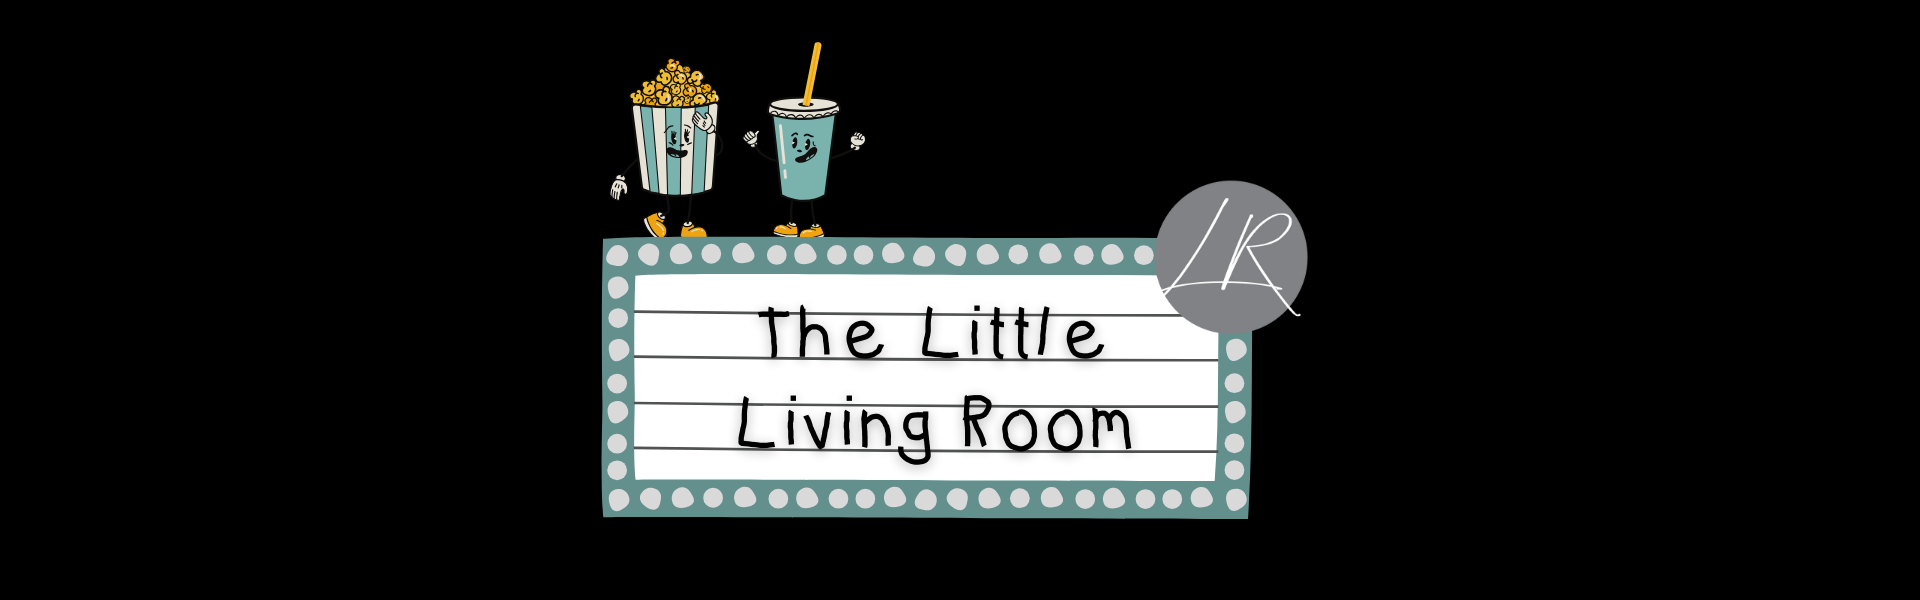 The Little Living Room